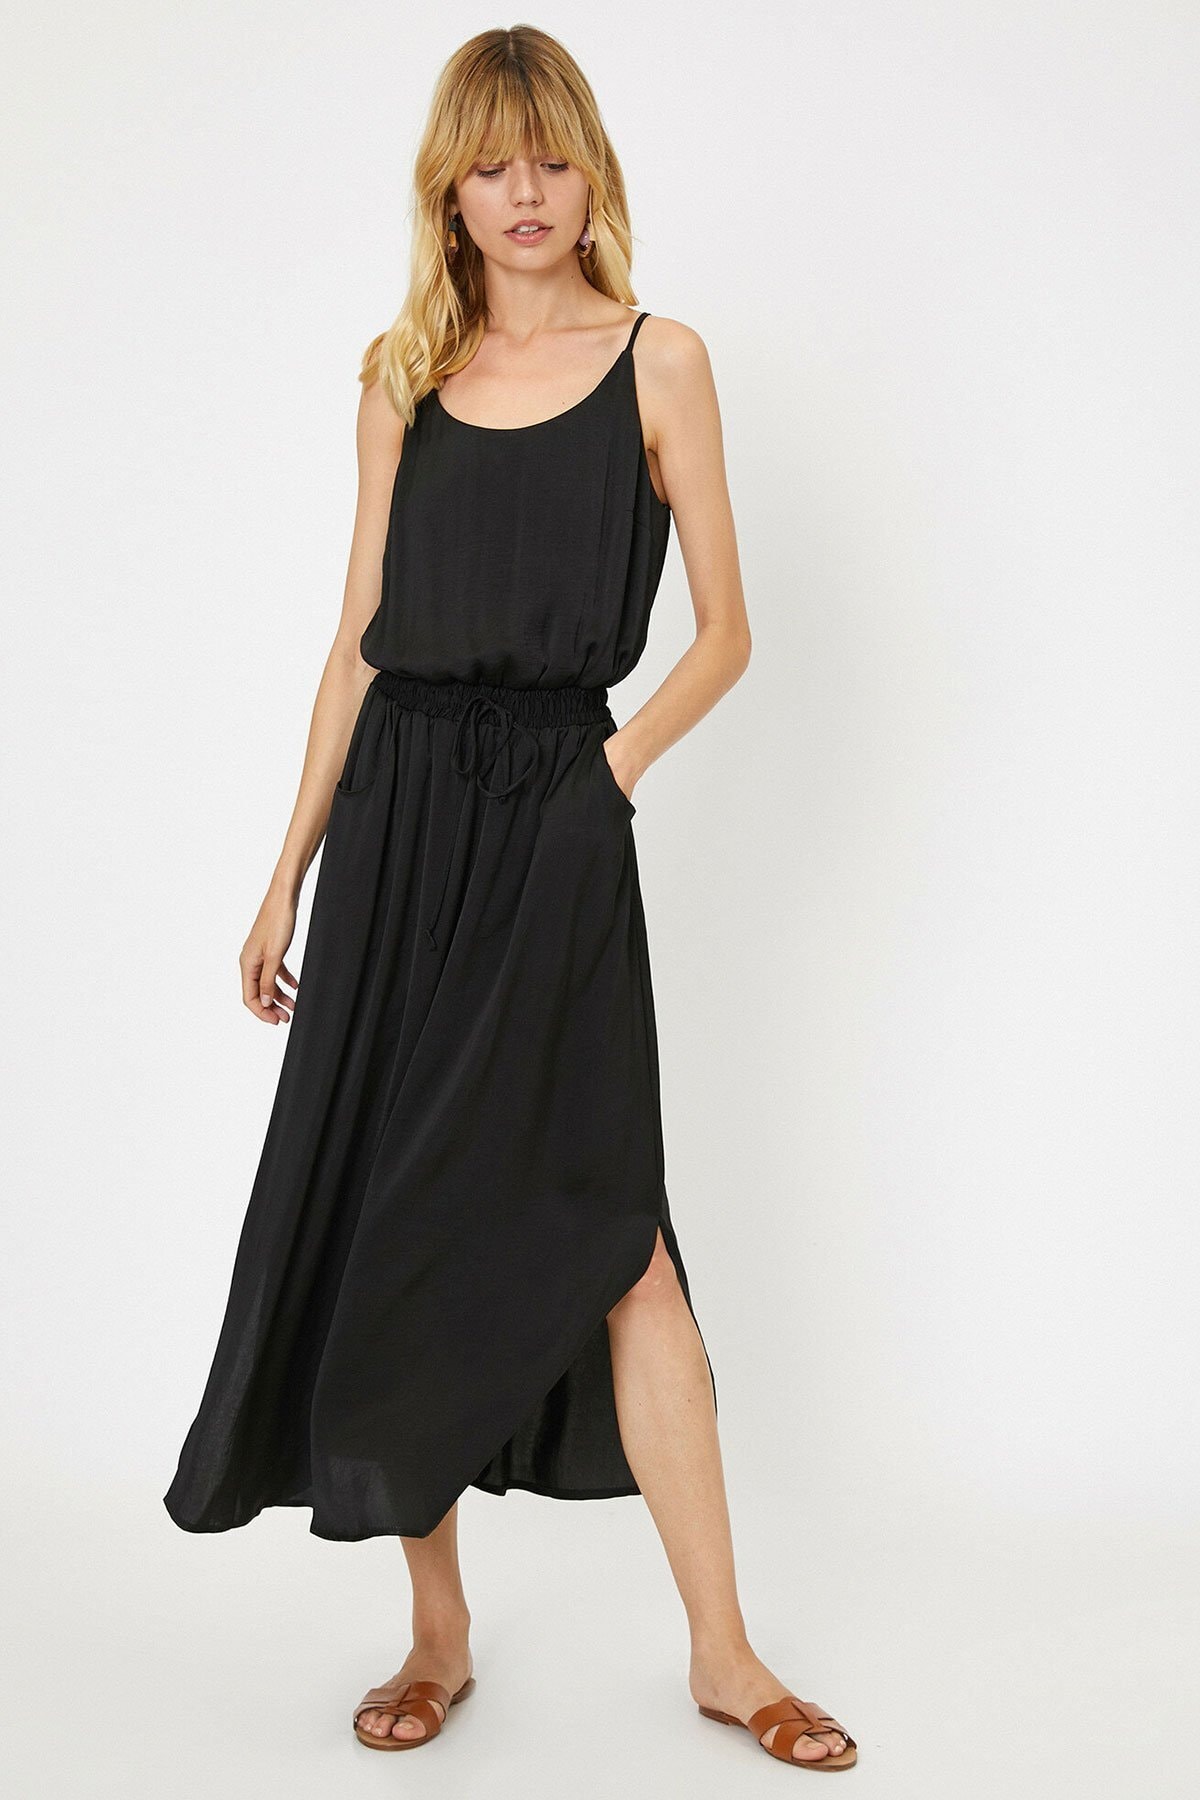 Koton Dress - Black - A-line